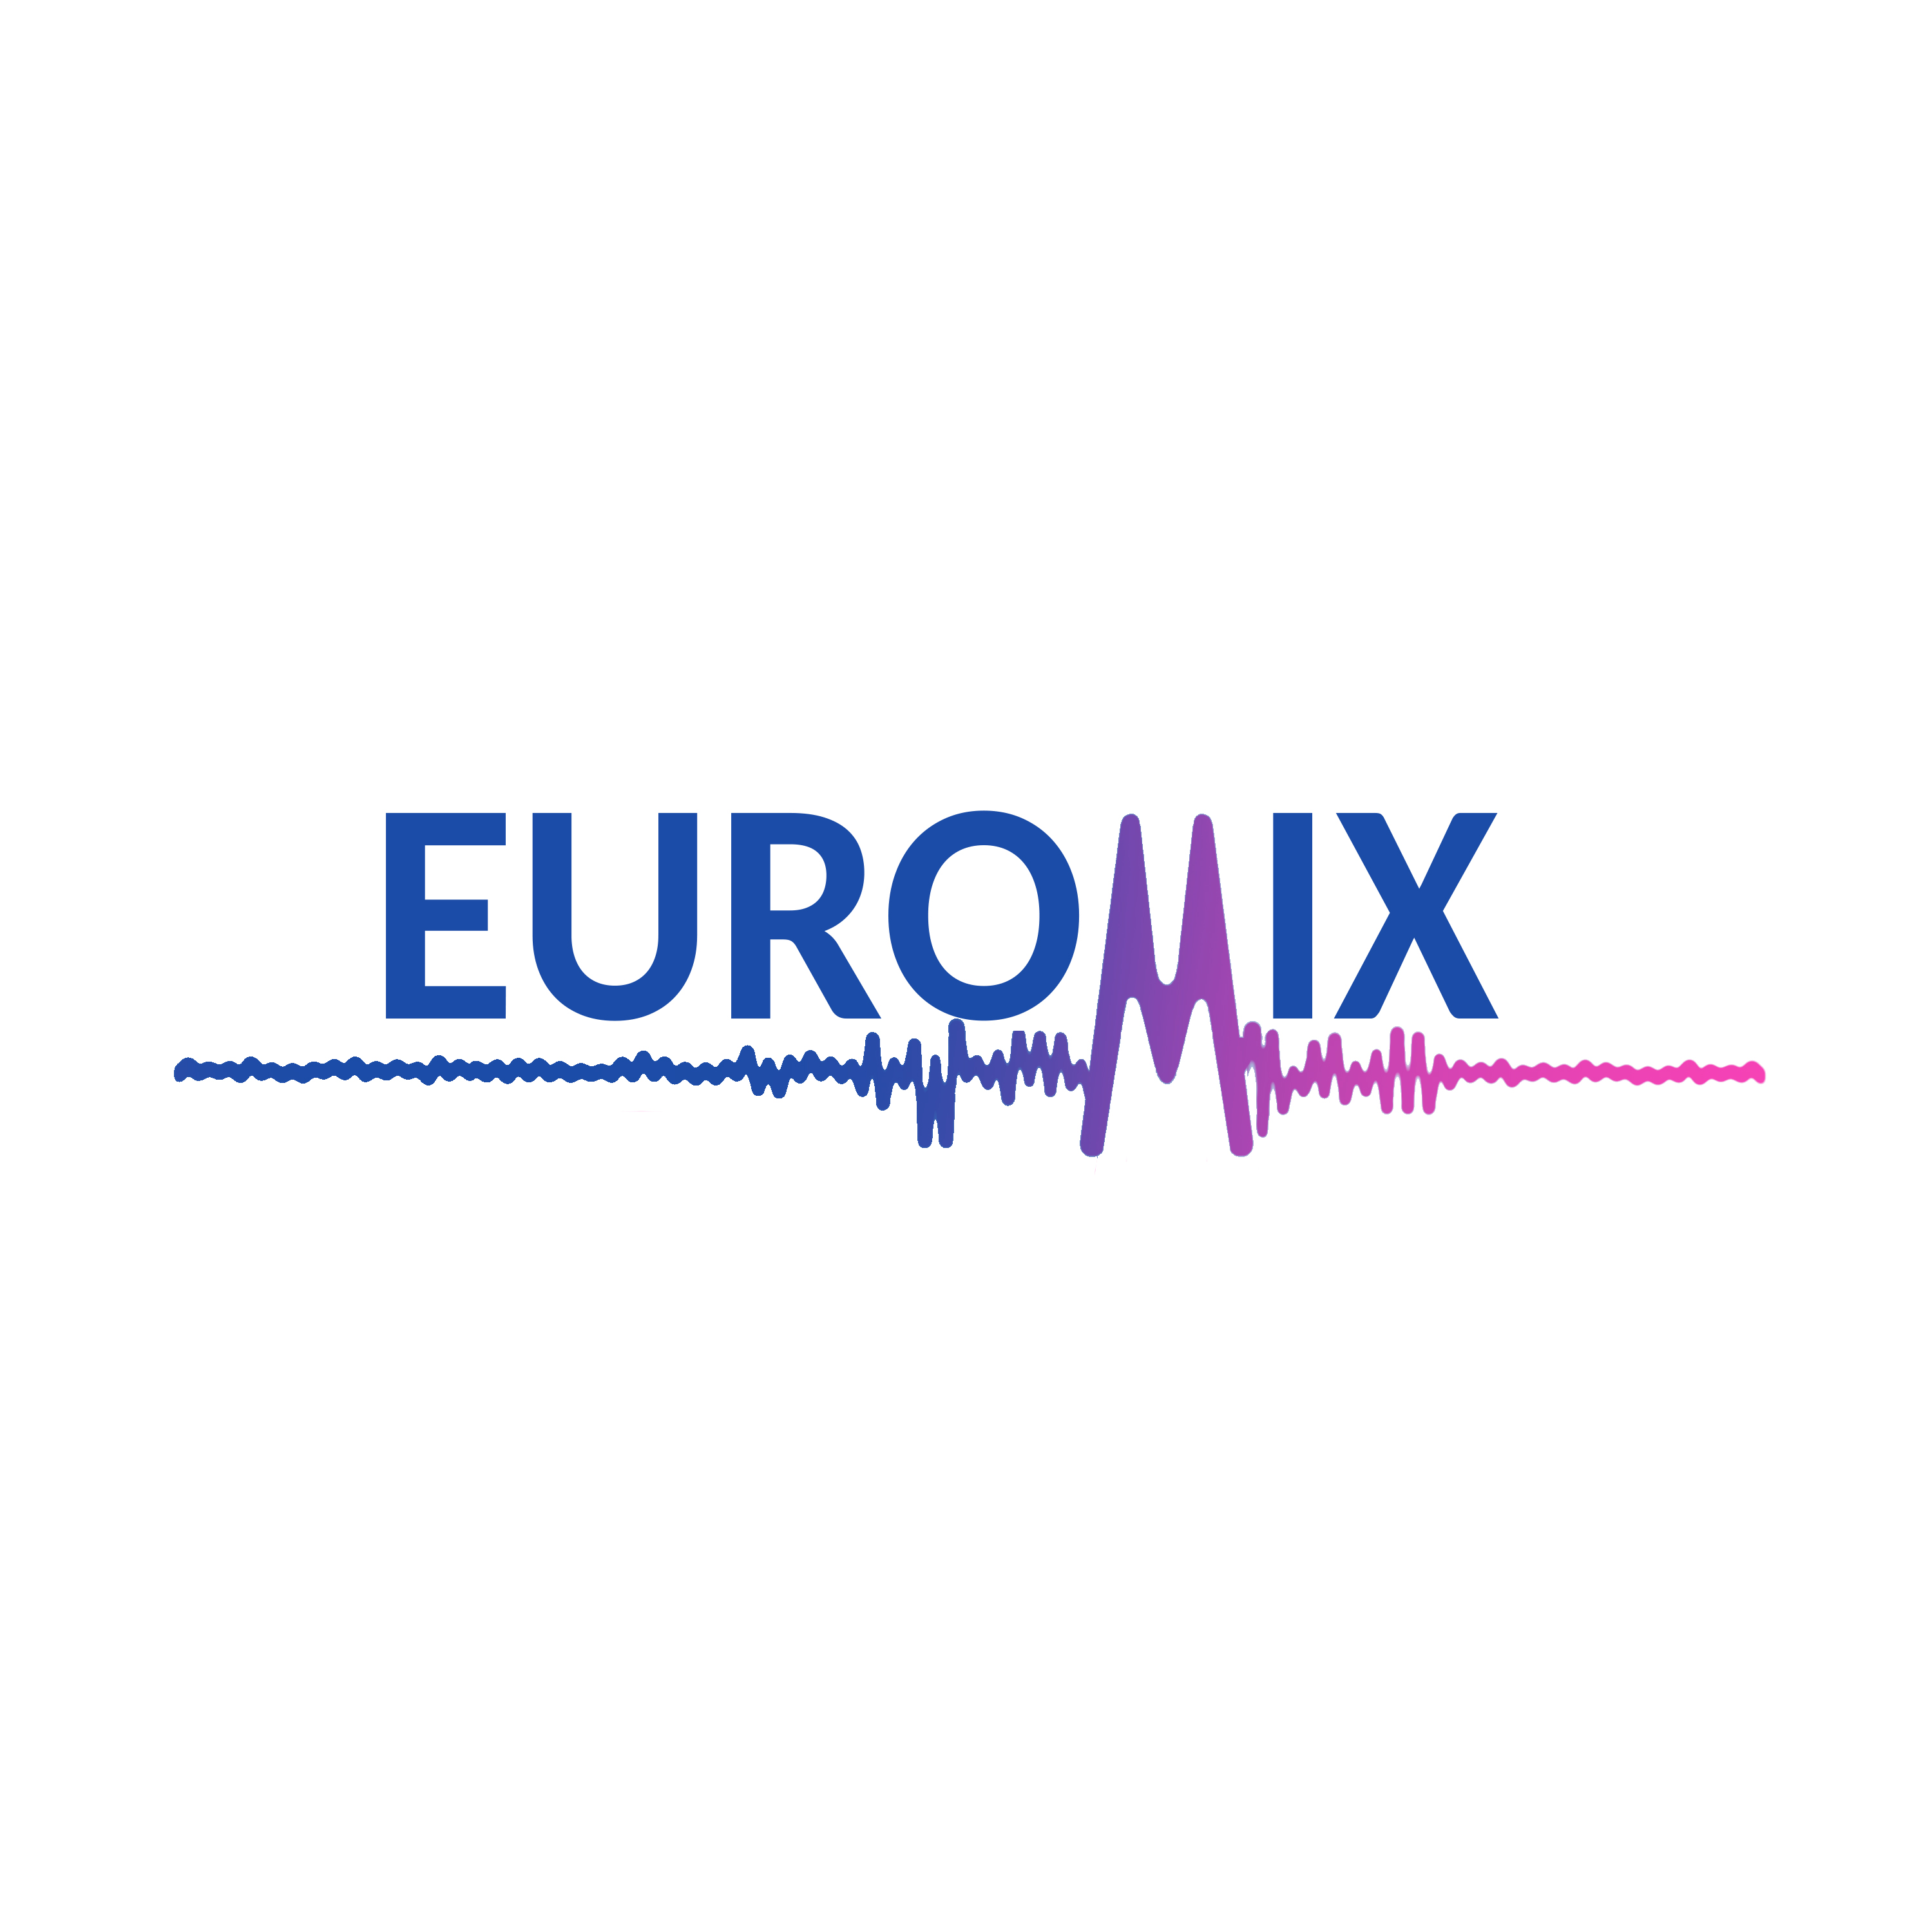 EuroMix